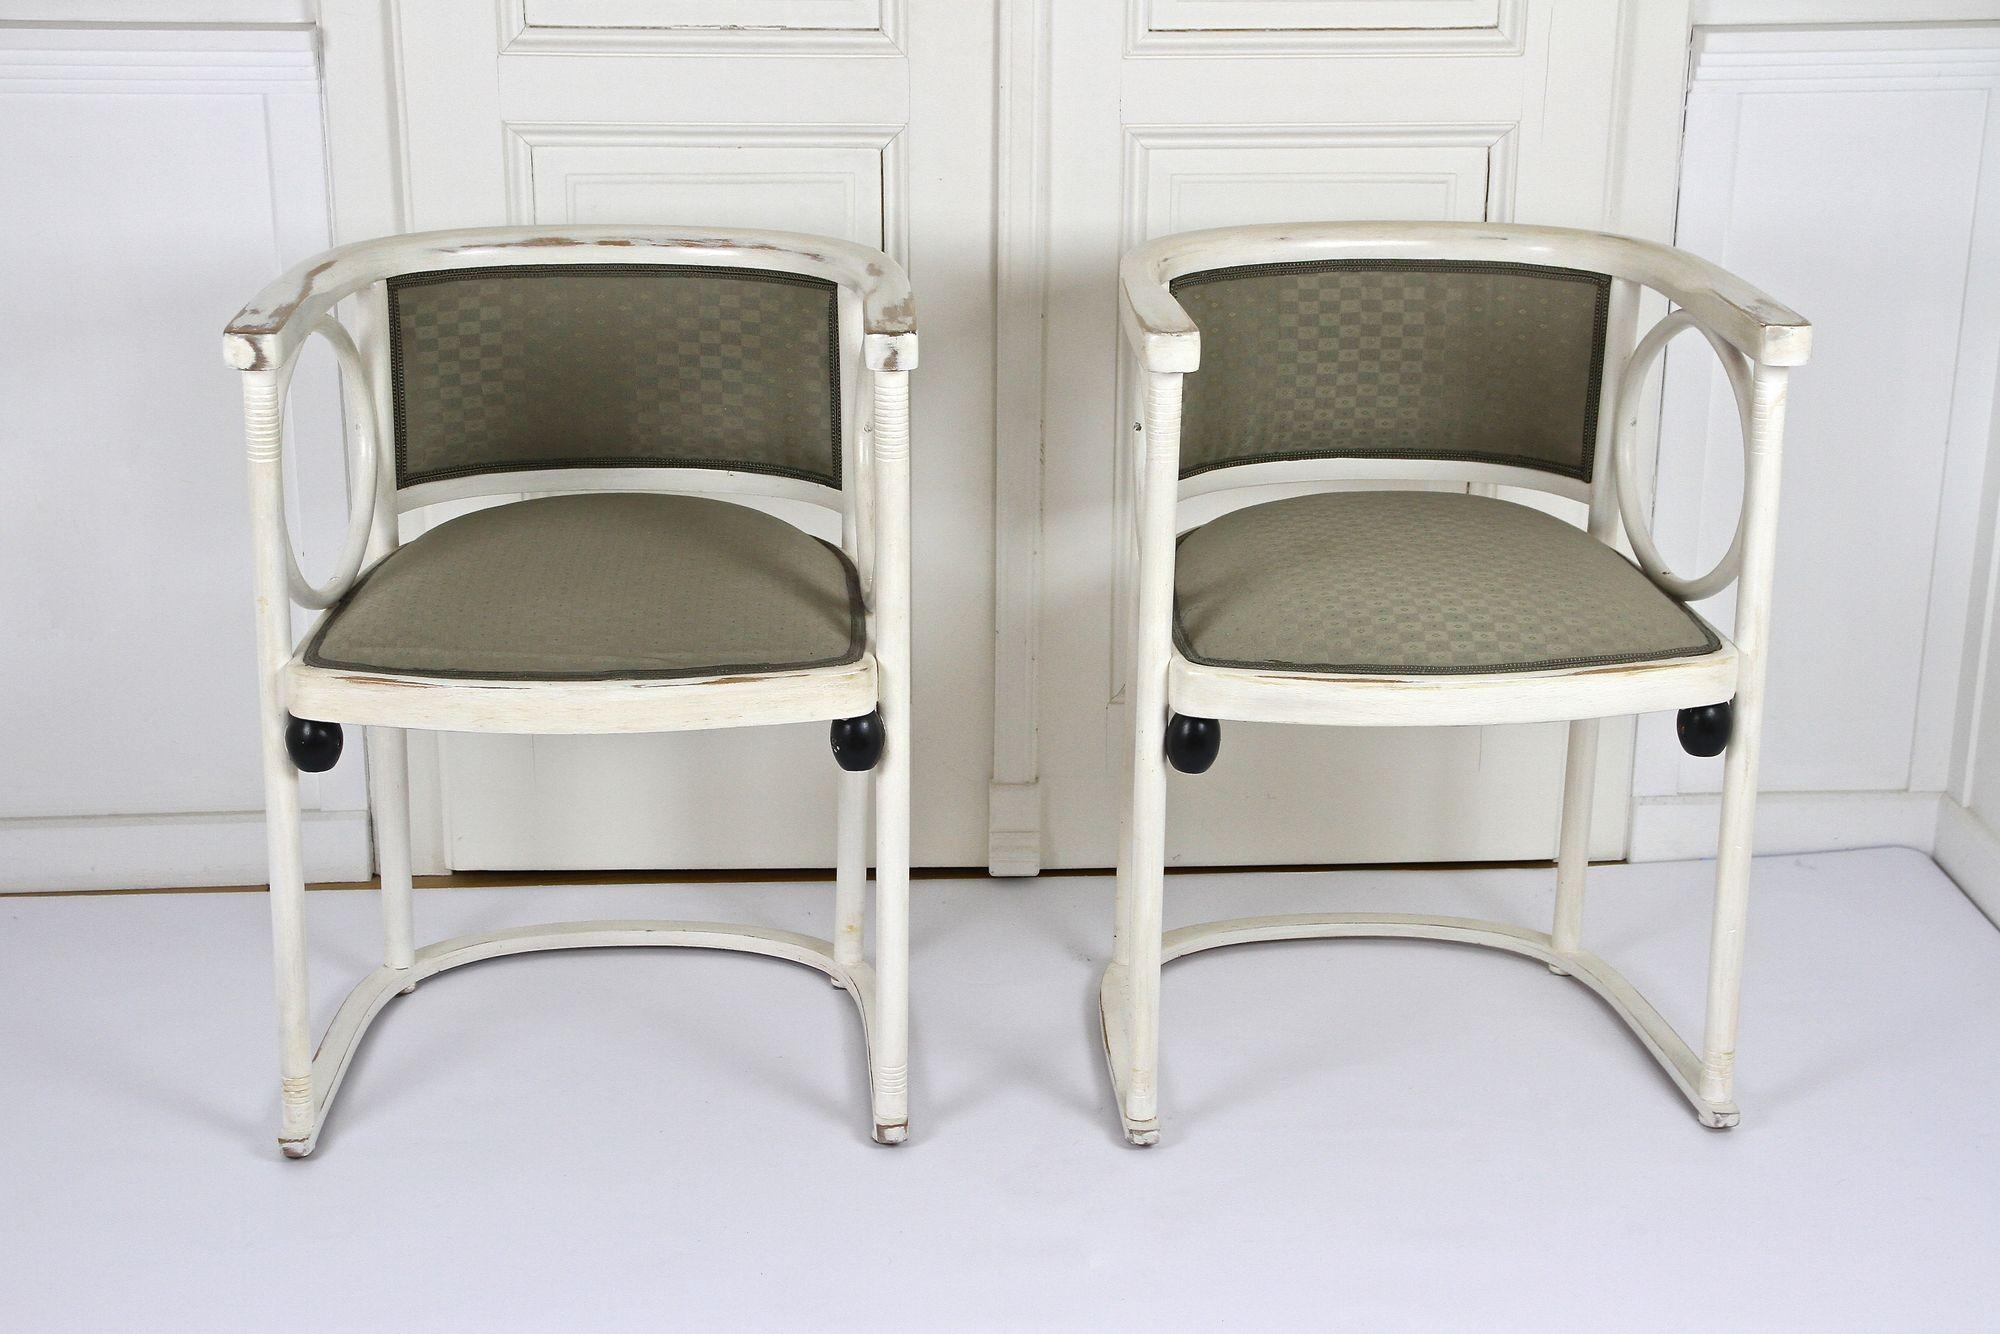 Fantastique paire de fauteuils blancs Art Nouveau Thonet de la période autour de 1905 en Autriche. Le design intemporel de ce fauteuil emblématique de l'Art nouveau est dû à la plume de l'architecte autrichien mondialement connu et pionnier du